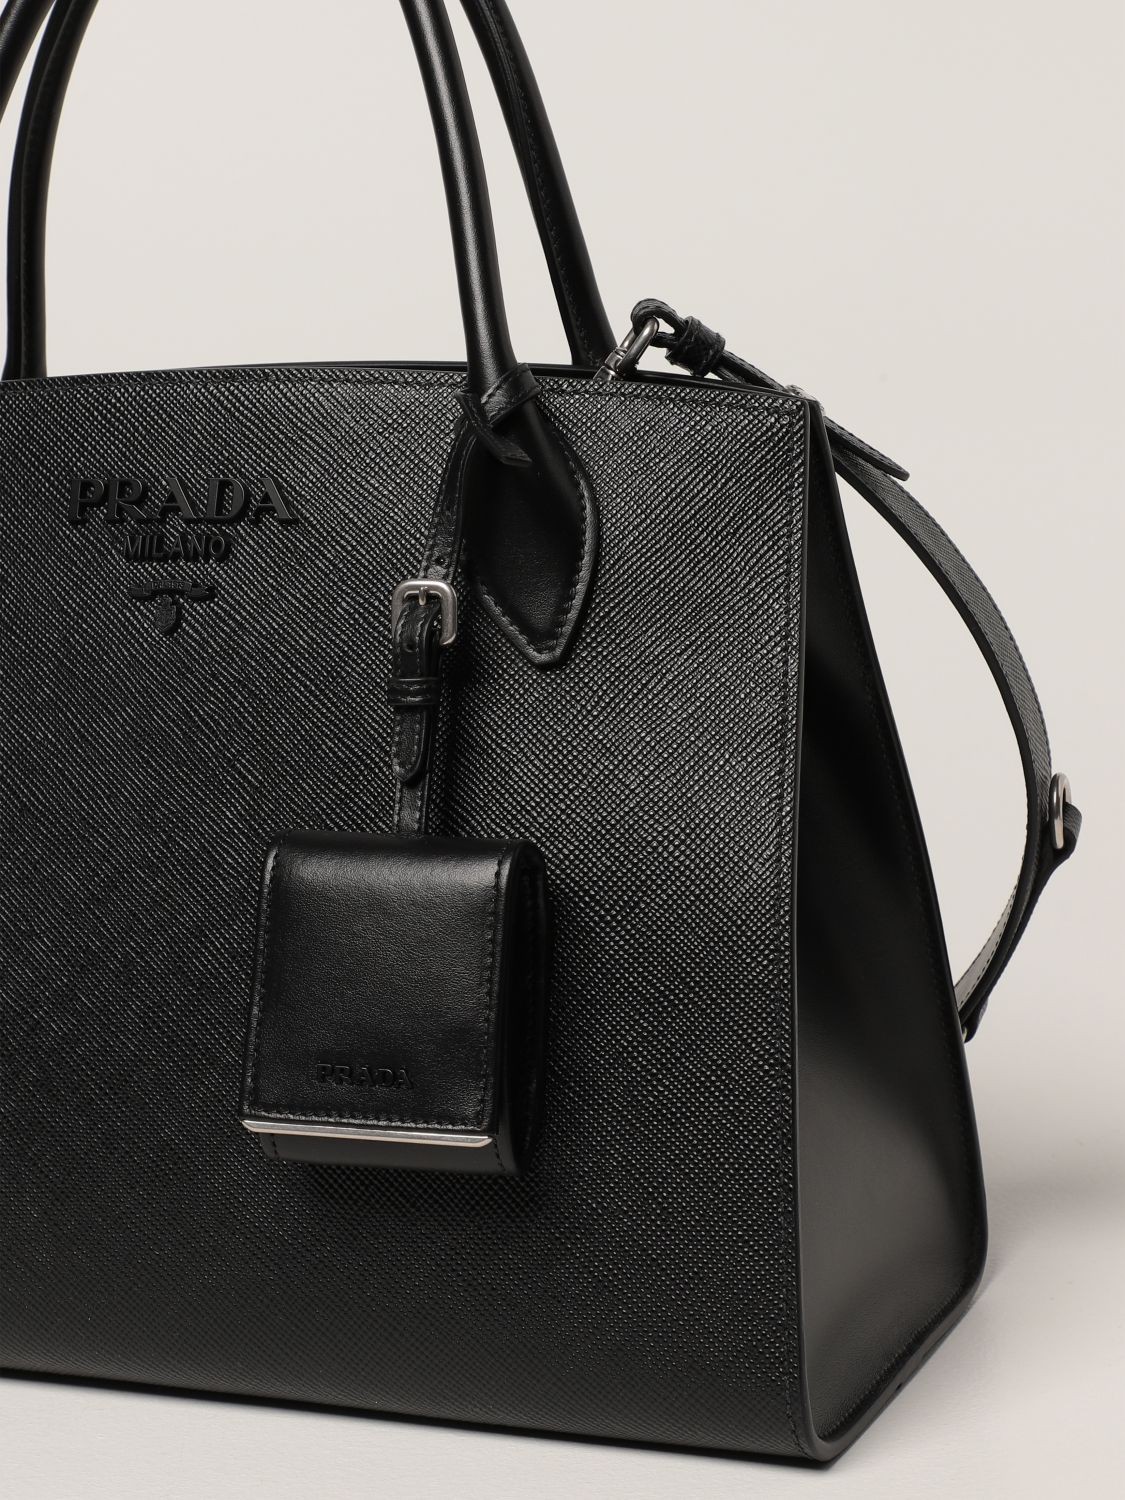 PRADA: Monochrome bag in saffiano leather - Black